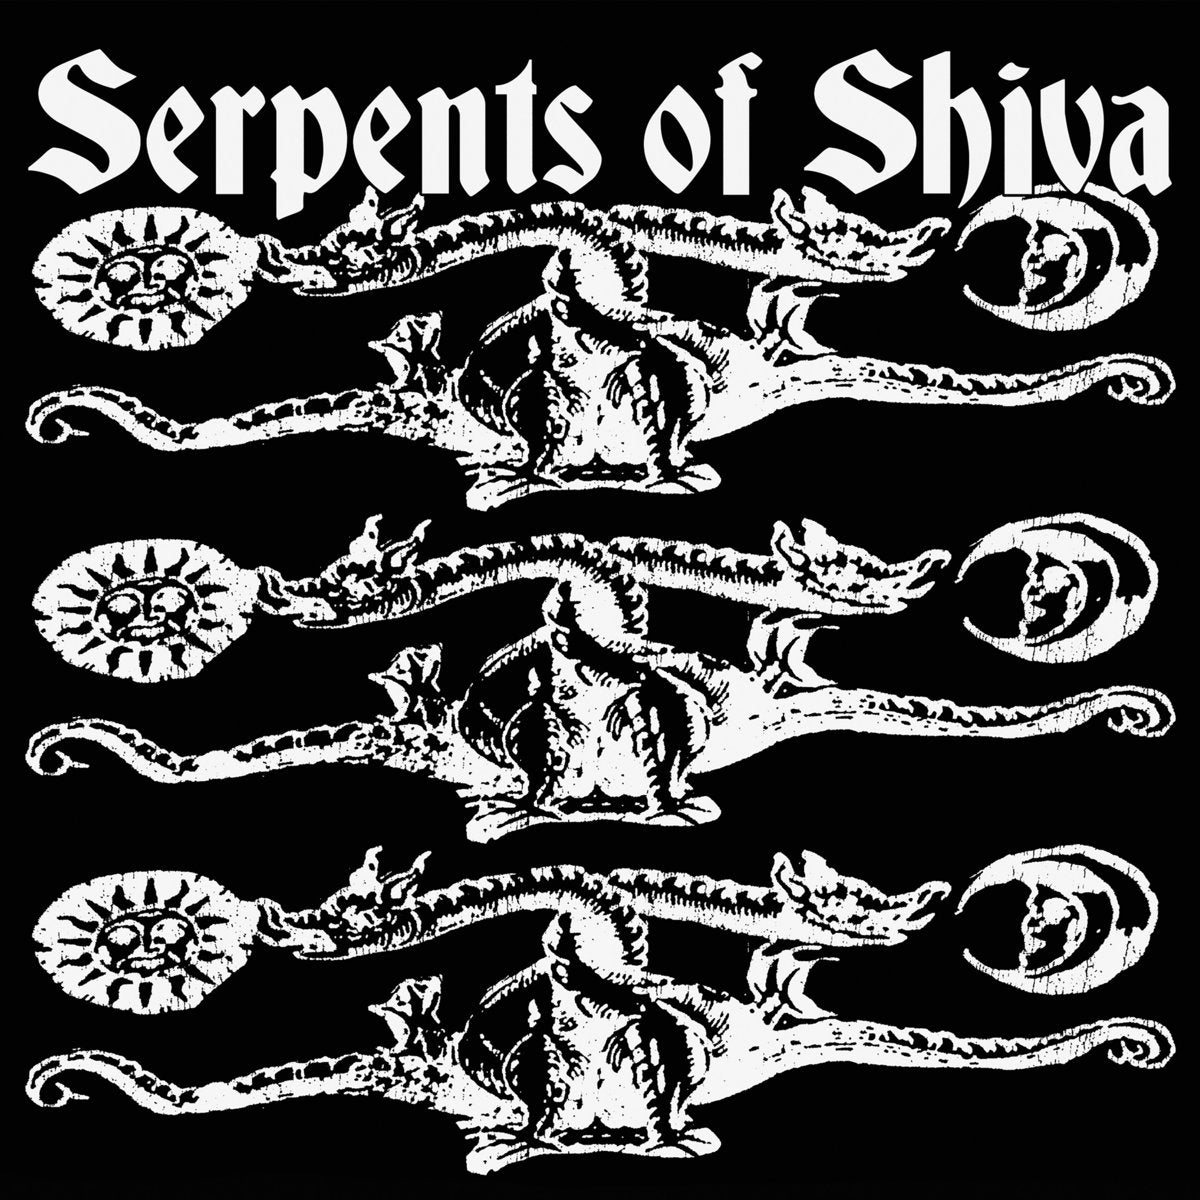 Serpents of Shiva "Serpents of Shiva" 7" Vinyl